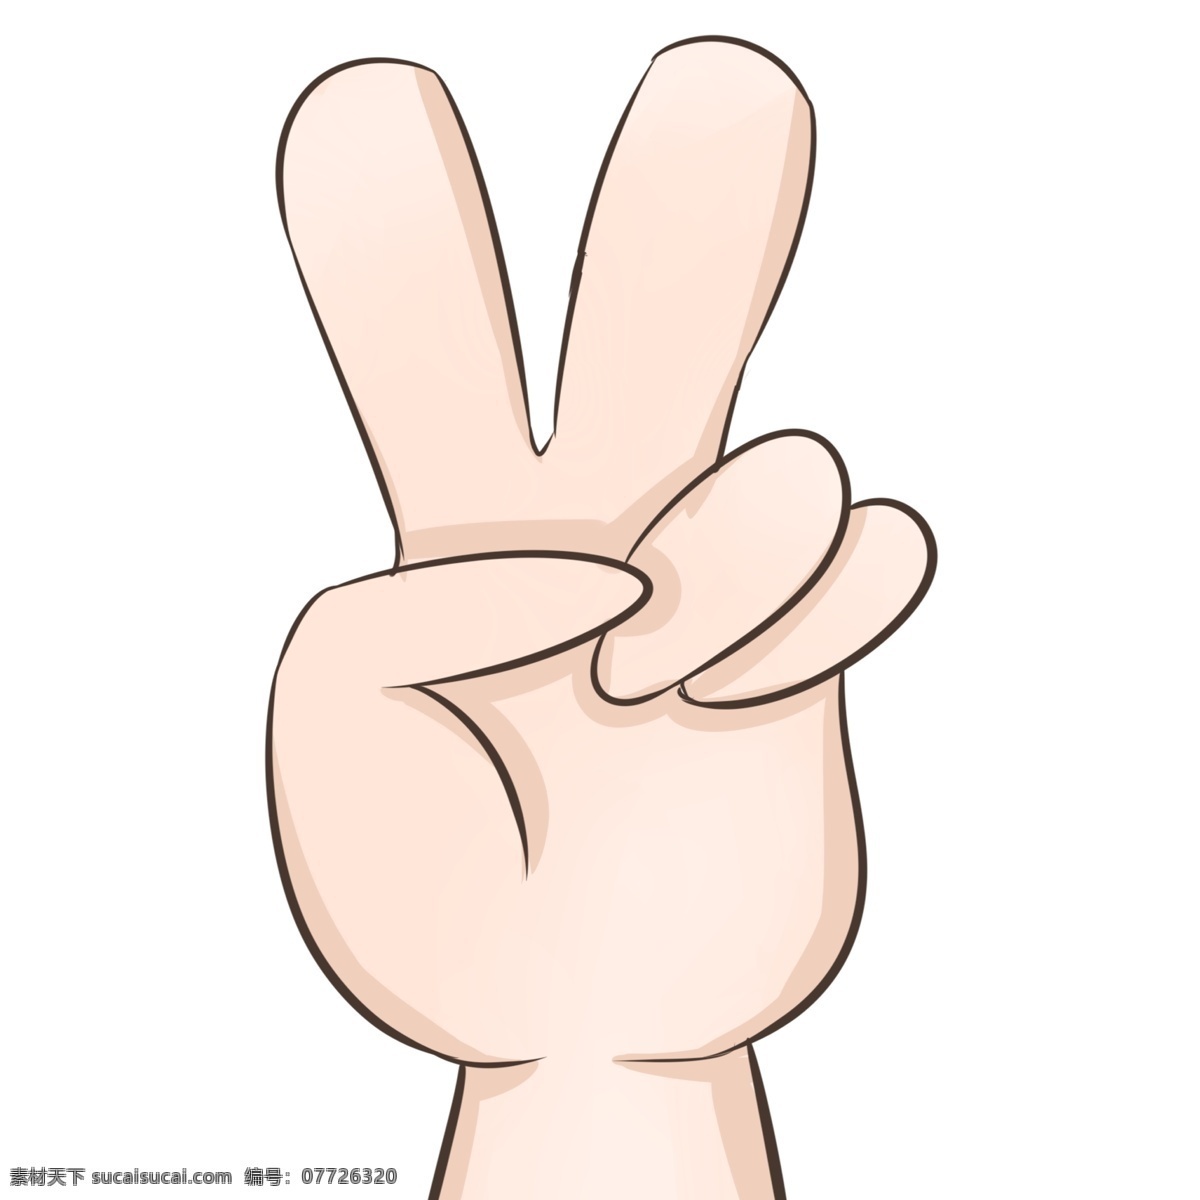 卡通 漂亮 手势 耶 插图 手的动态 耶的手势 装饰图案 创意手 完美 可爱的贴纸 手势图标 指示动作 比划